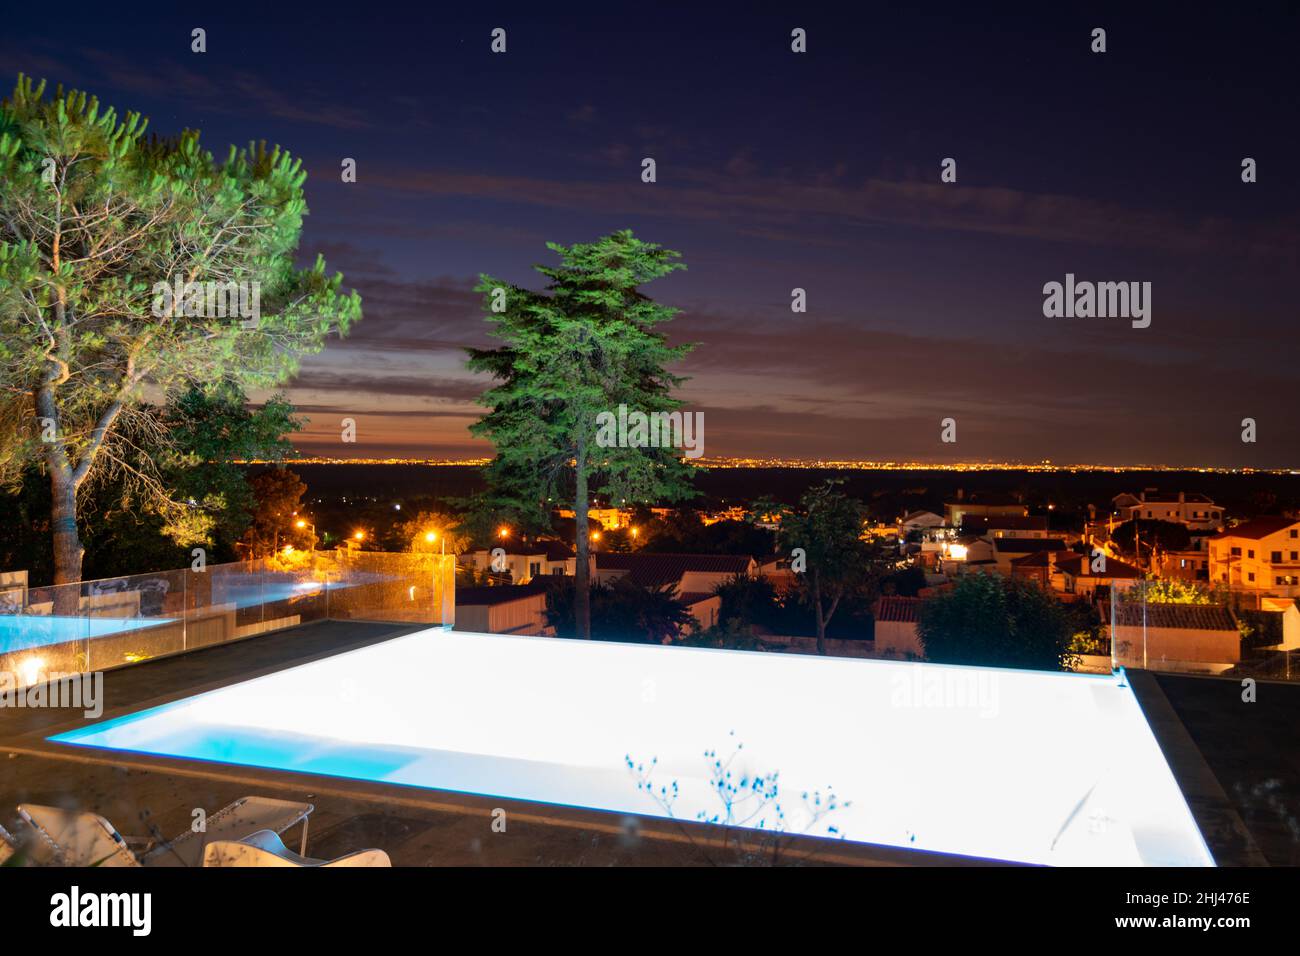 Piscine de nuit, événements de fête, vue sur le paysage de nuit de la ville depuis la piscine d'eau Banque D'Images